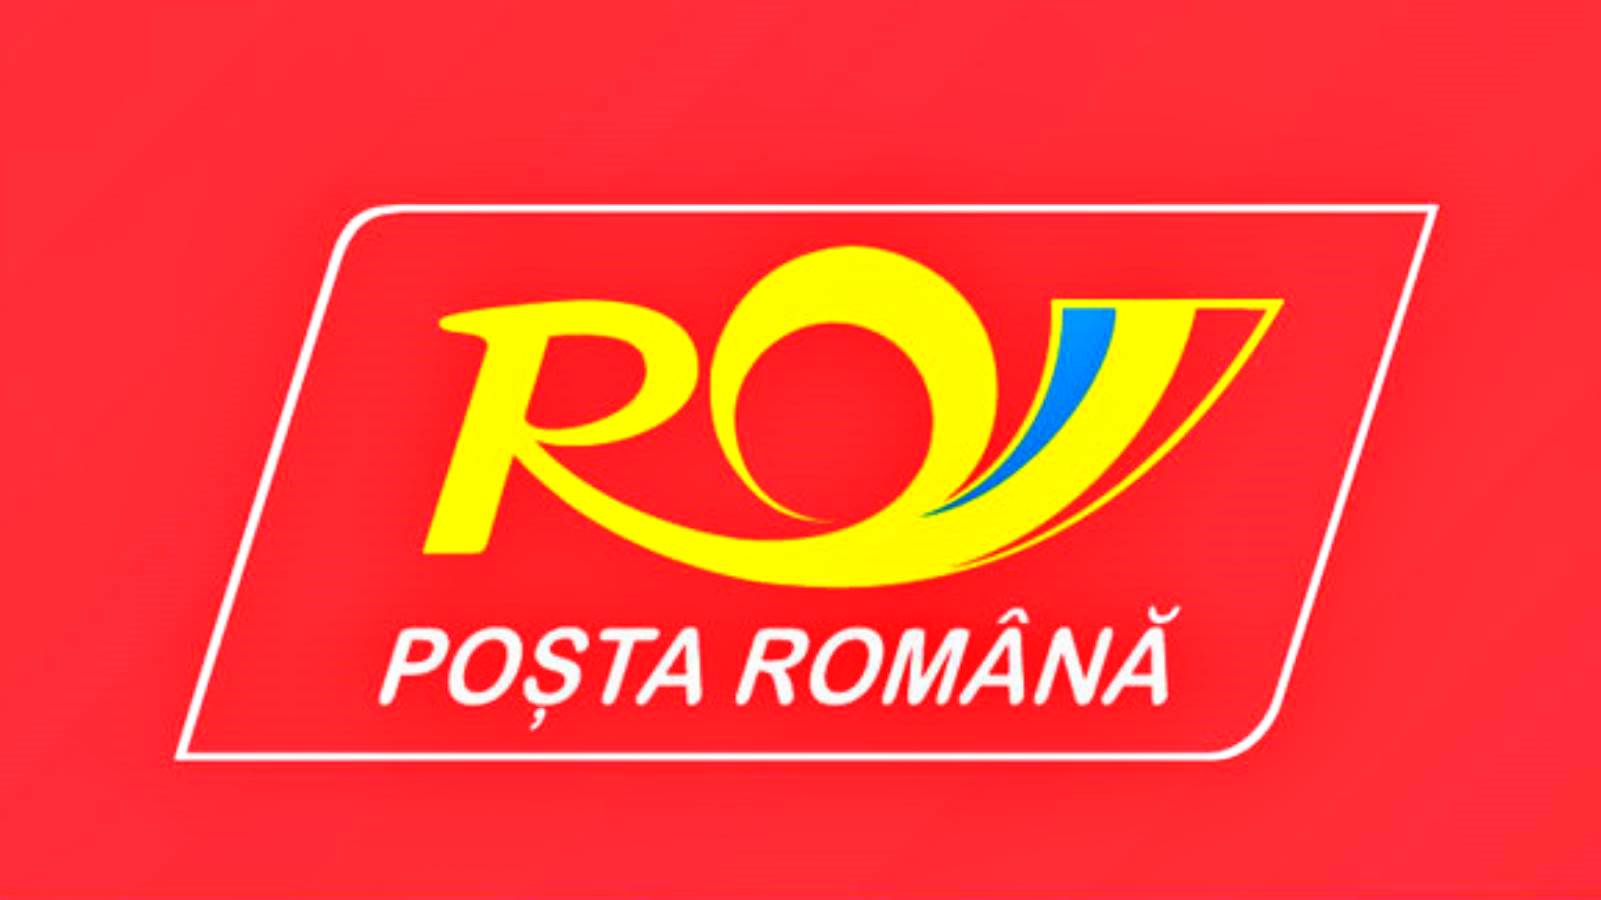 Åtgärderna som aviserats av den rumänska posten för rumäner över hela landet